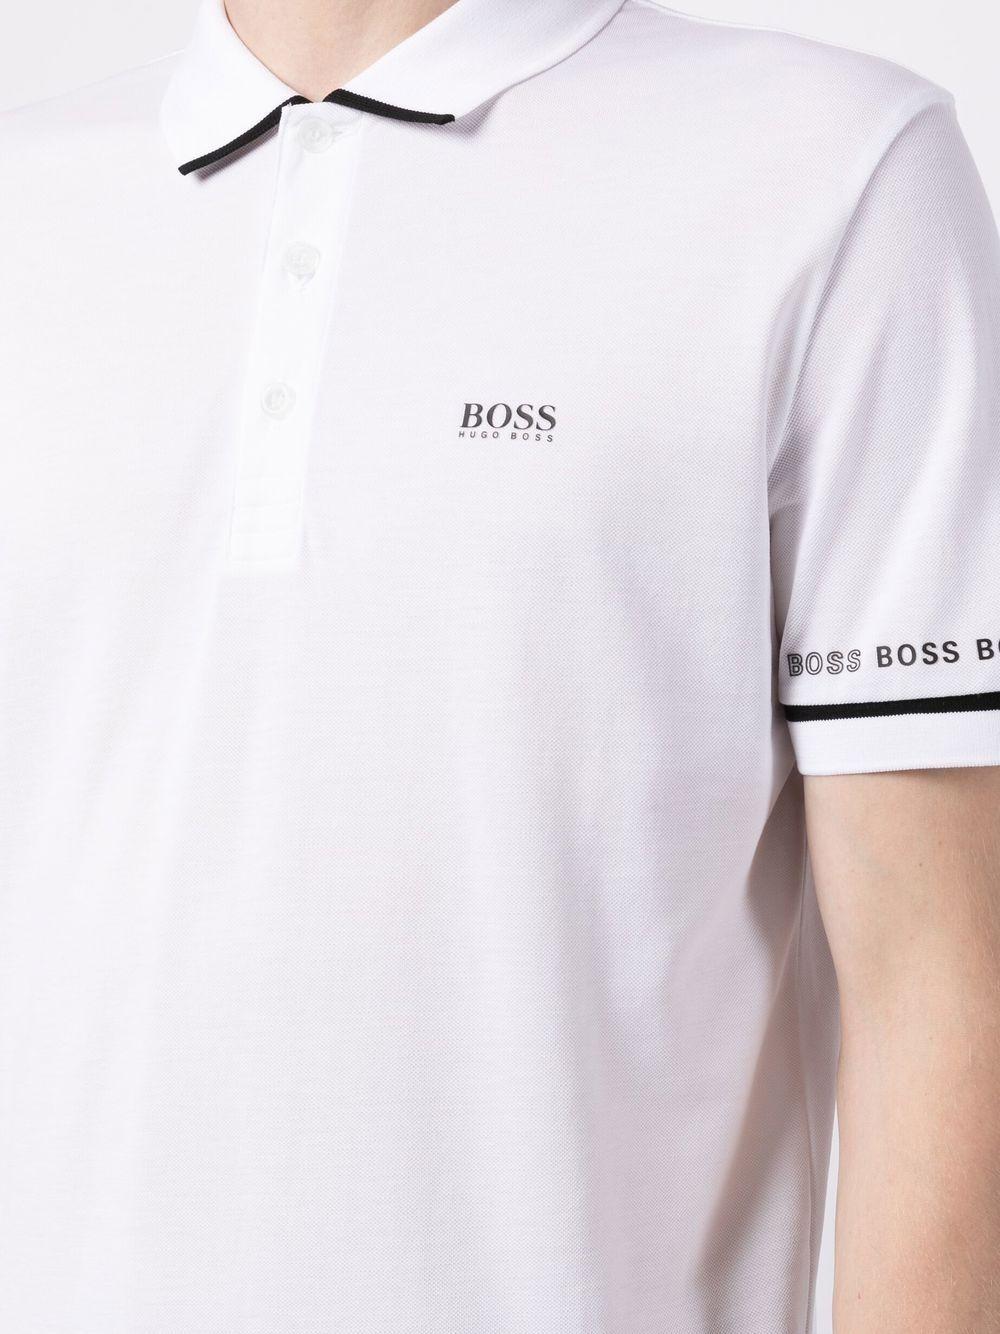 BOSS by HUGO BOSS Polo Shirt In Logo Details White for Men | Lyst